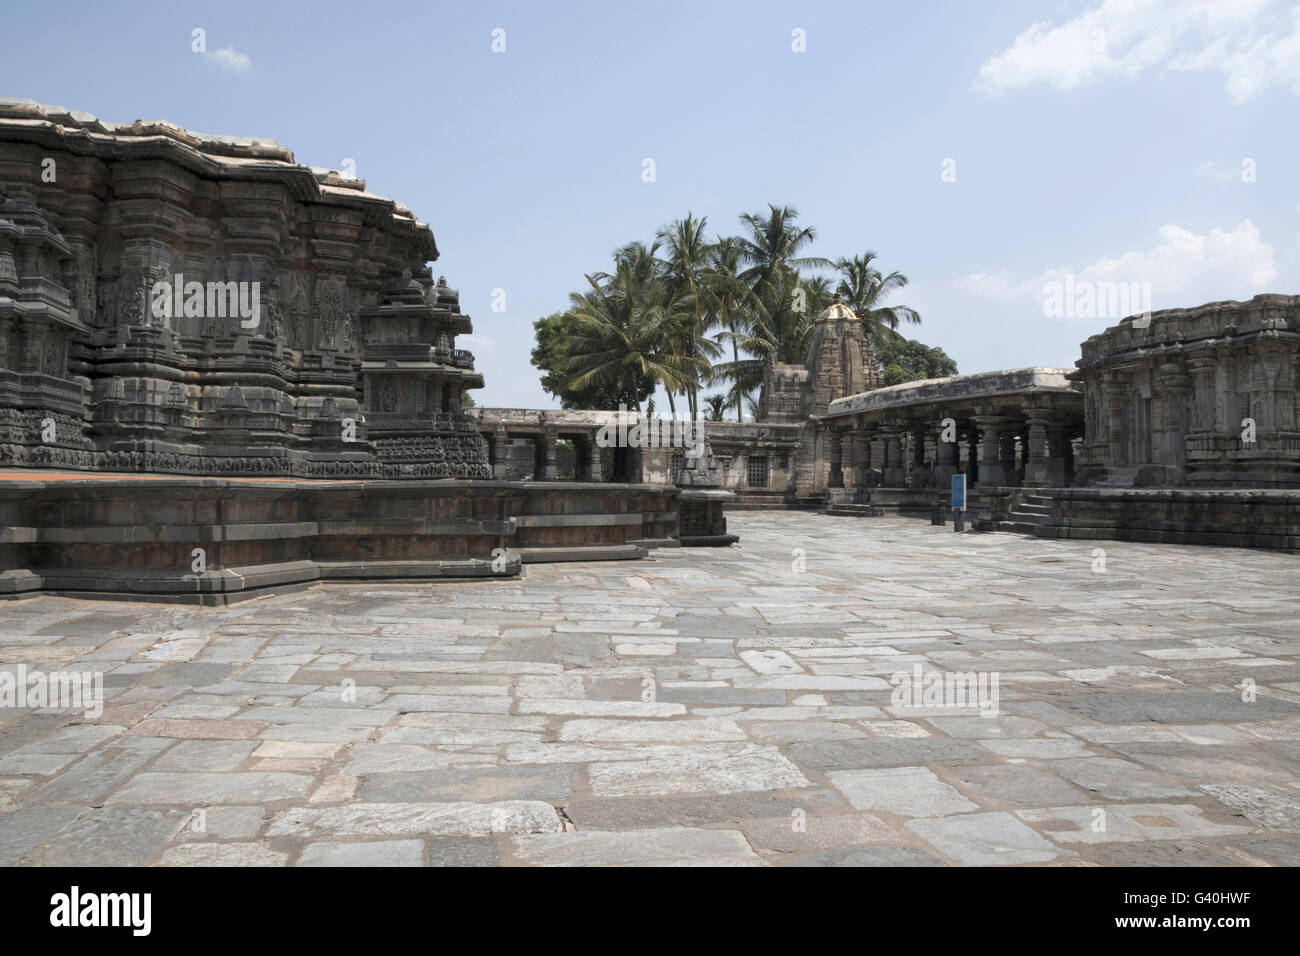 Vue sud-ouest du complexe du temple de Chennakeshava, Belur, Karnataka, Inde. De gauche à droite, le temple de Chennakeshava, Soumyanayaki temple. Banque D'Images